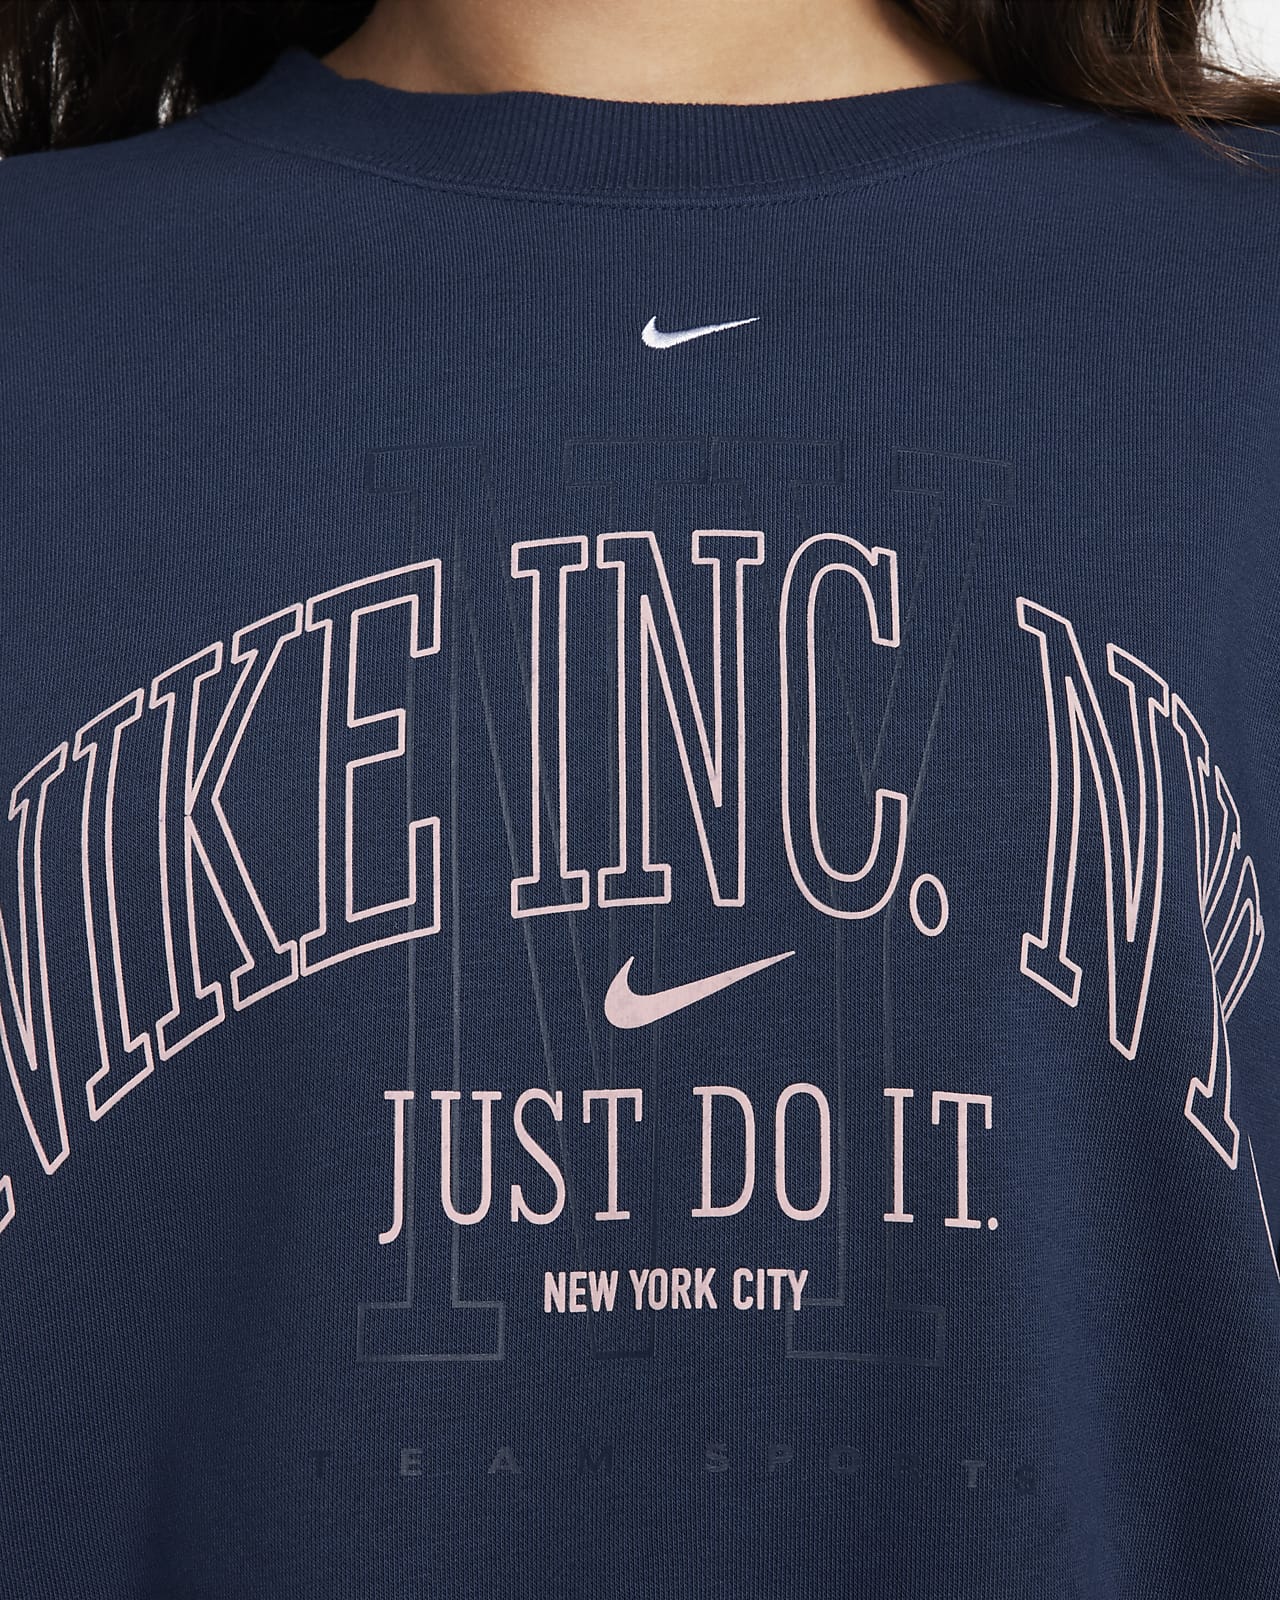 Nike Sportswear Phoenix Fleece Crew-Neck Sweatshirt - Women's